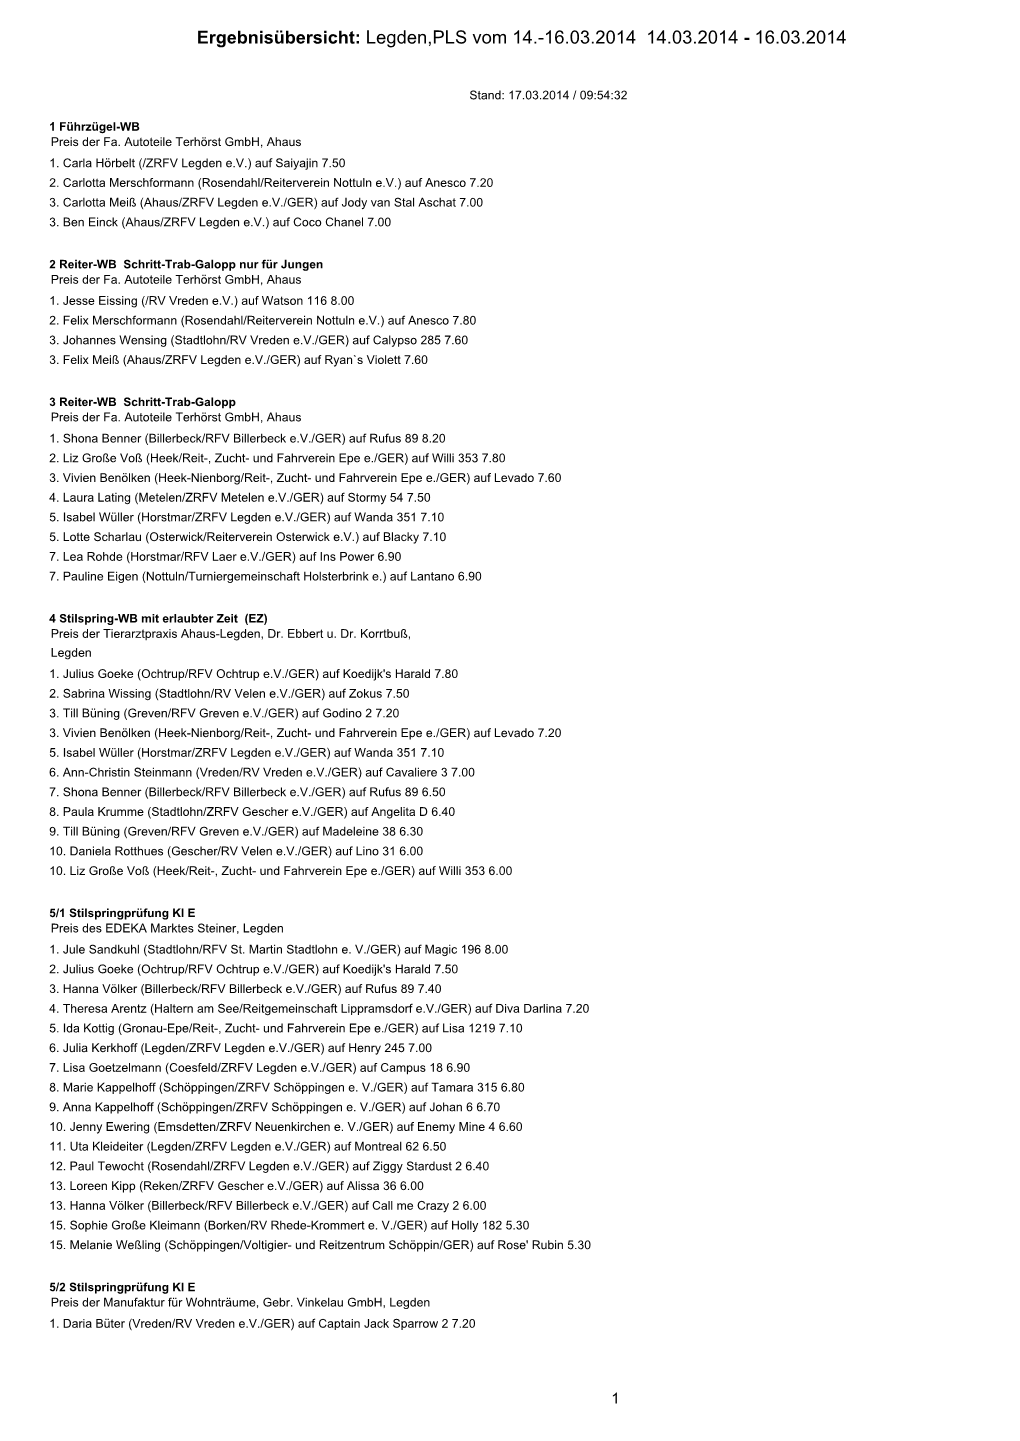 Ergebnisübersicht: Legden,PLS Vom 14.-16.03.2014 14.03.2014 - 16.03.2014